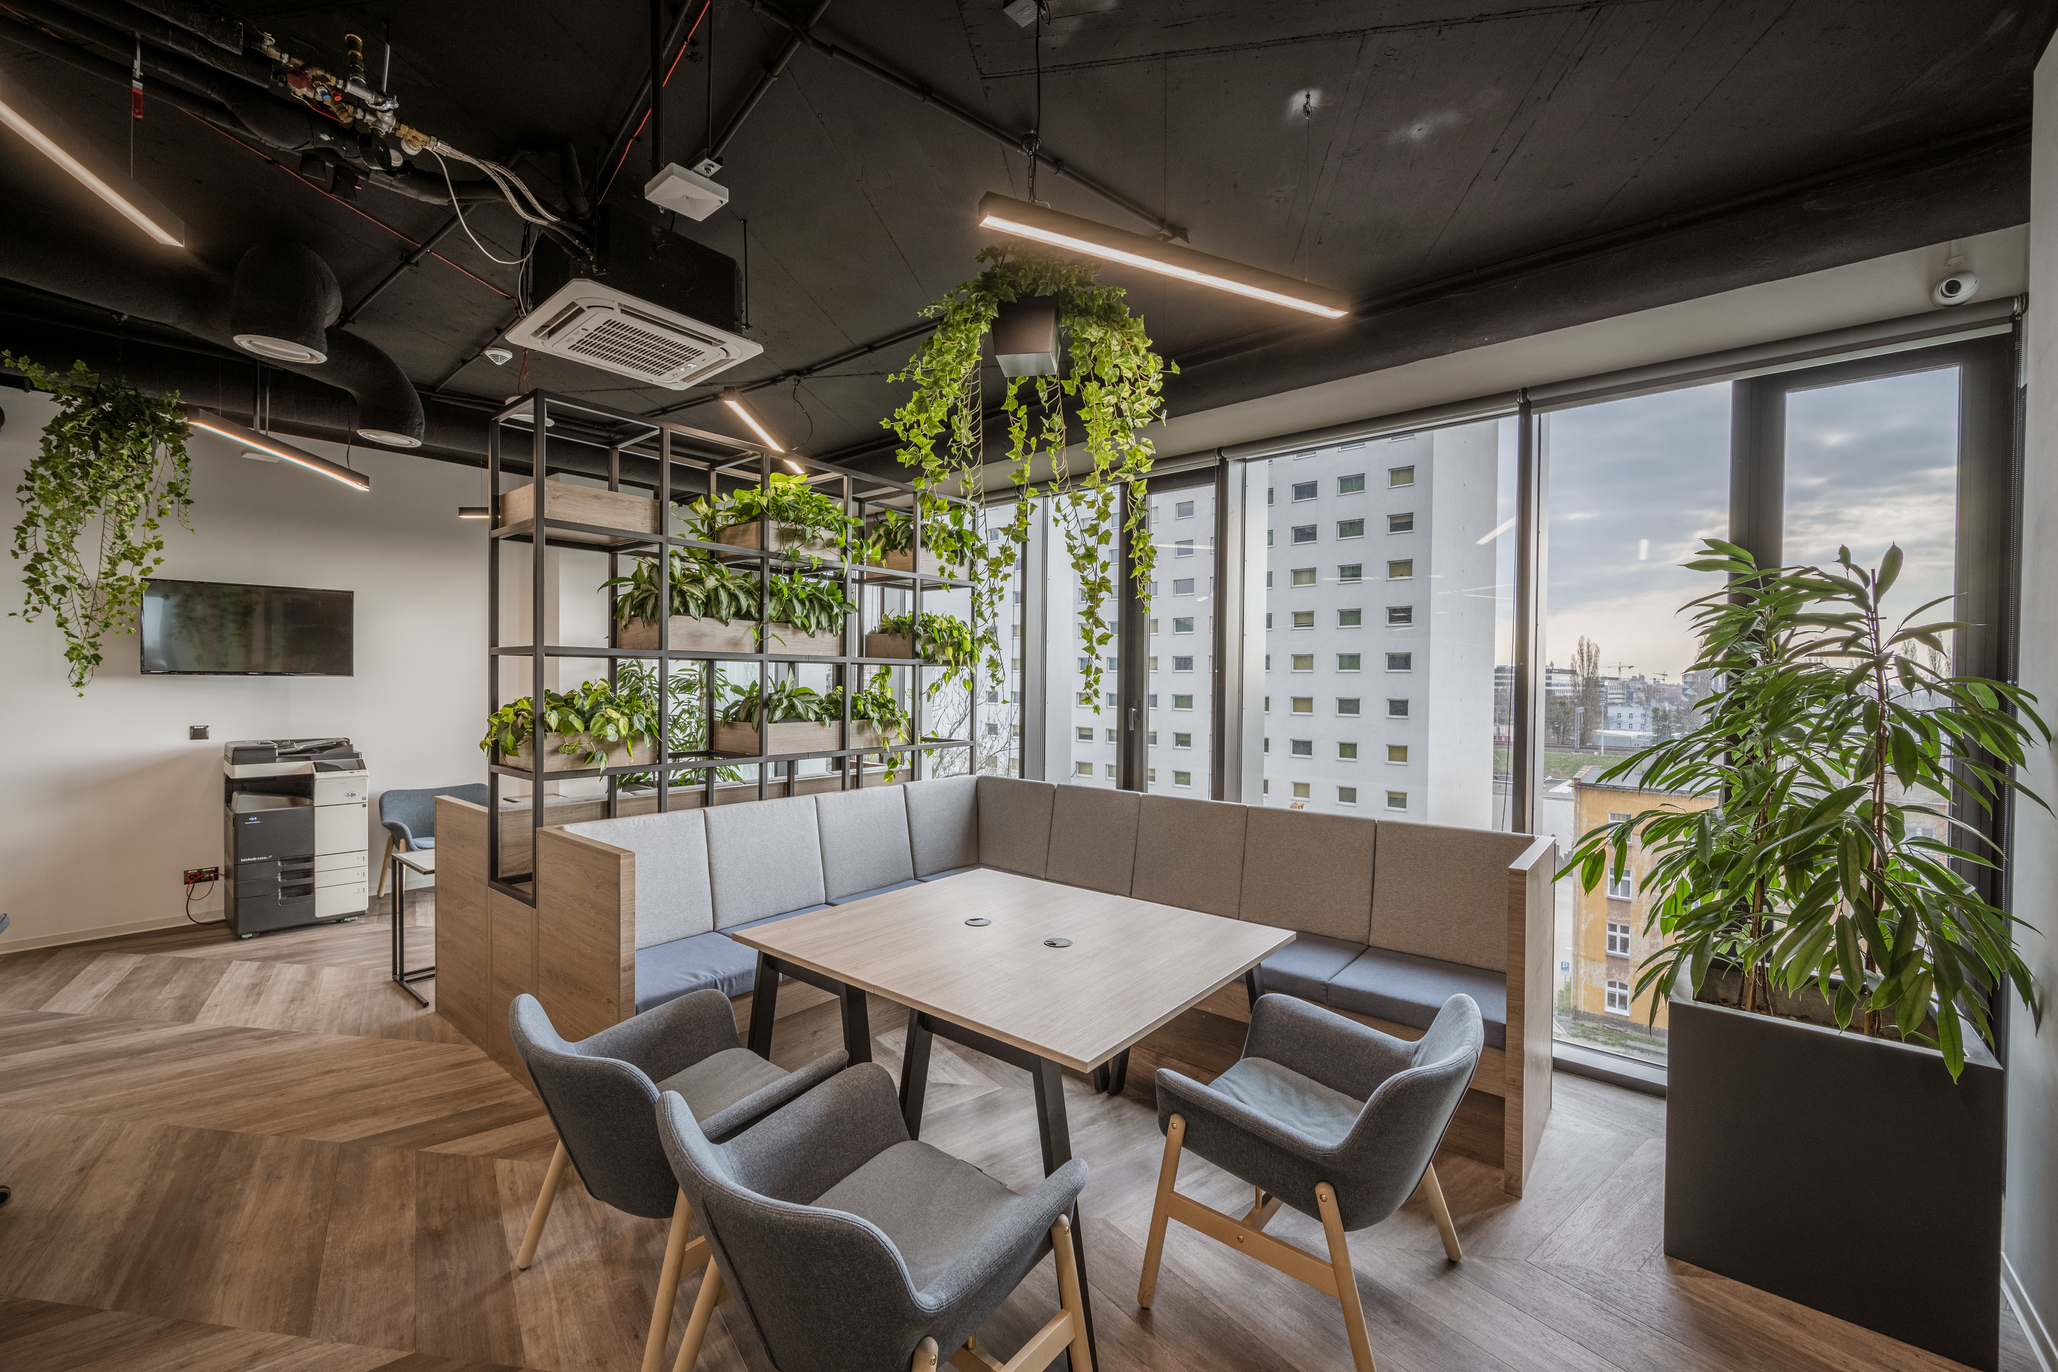 Quorum – Private office space for 5 in premium standard